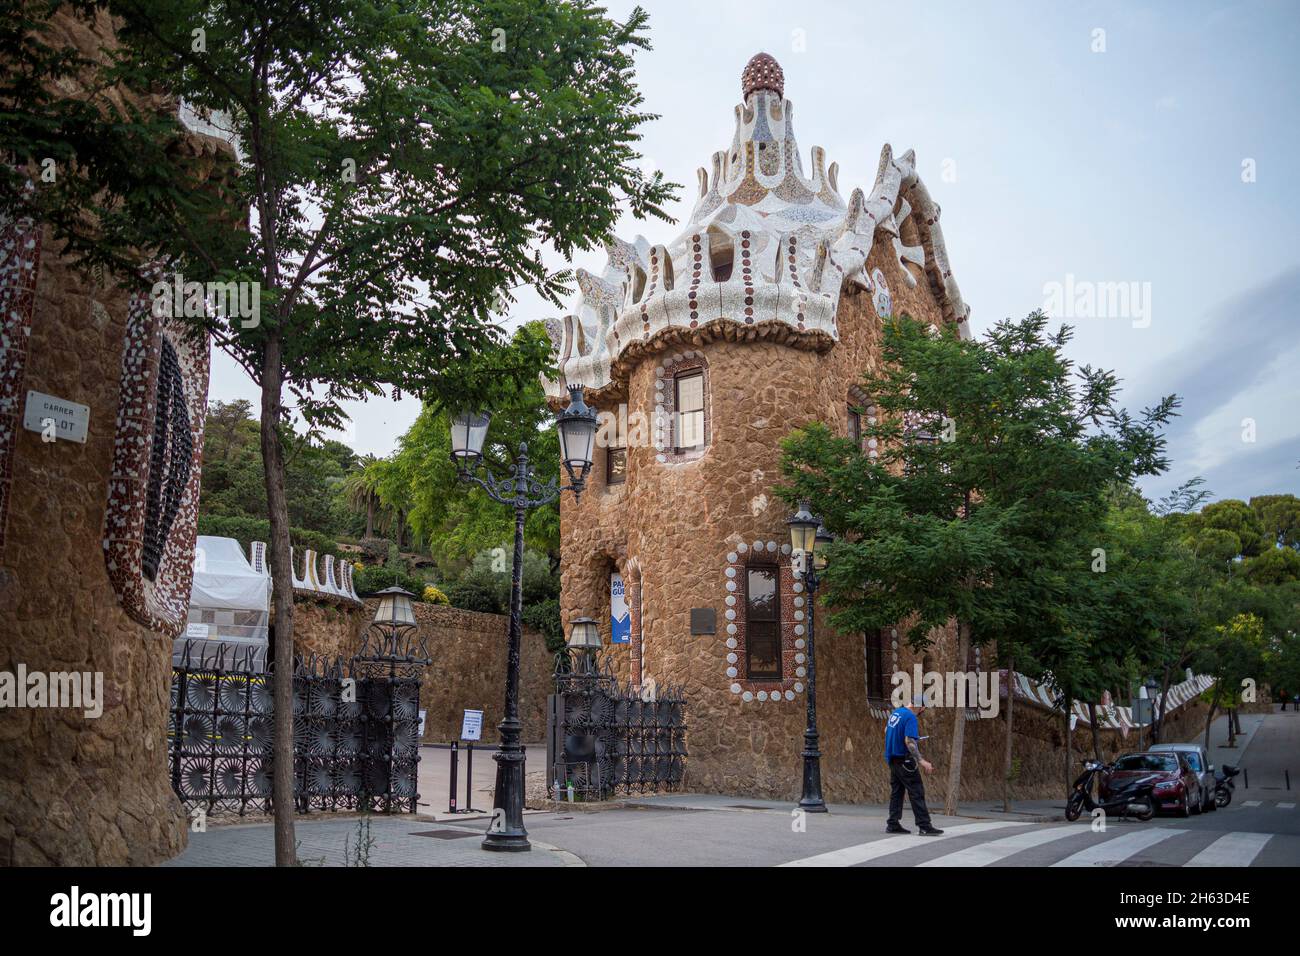 il parco artistico guell di antoni gaudí a barcellona, in spagna, è stato costruito tra il 1900 e il 1914 ed è una famosa attrazione turistica. Foto Stock